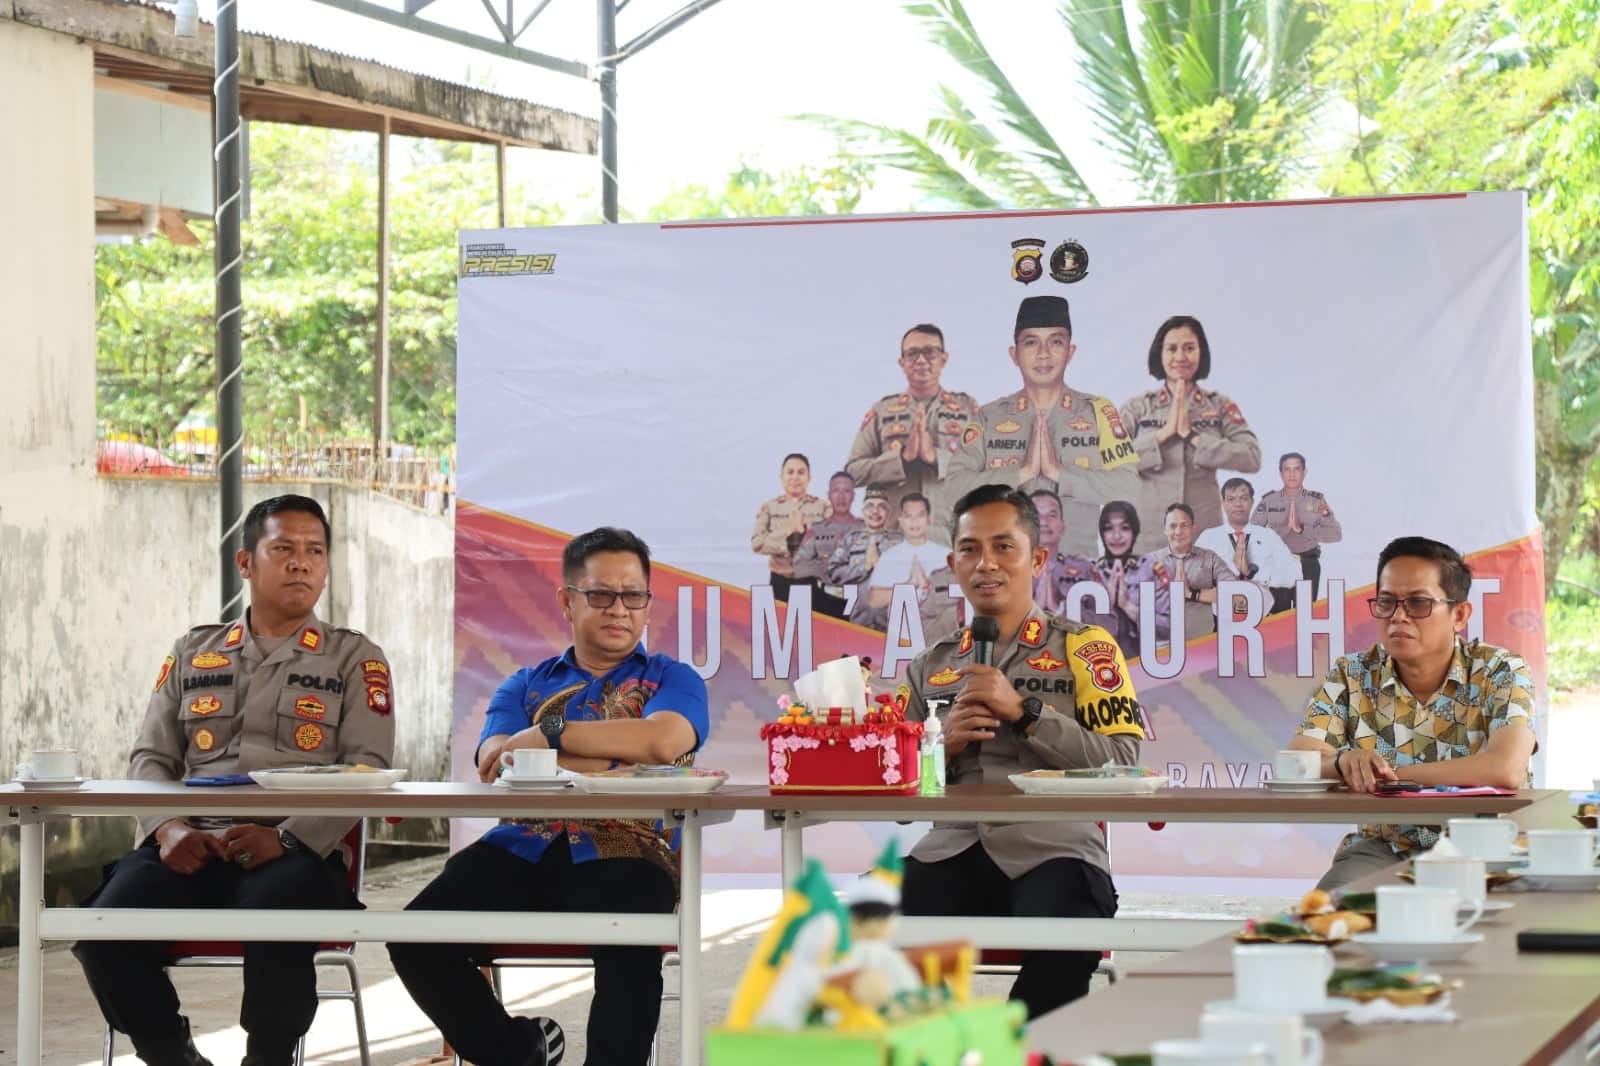 Kapolres Kubu Raya, AKBP Arief Hidayat dalam sebuah program "Jumat Curhat". (Foto: Dokumentasi/Jauhari)